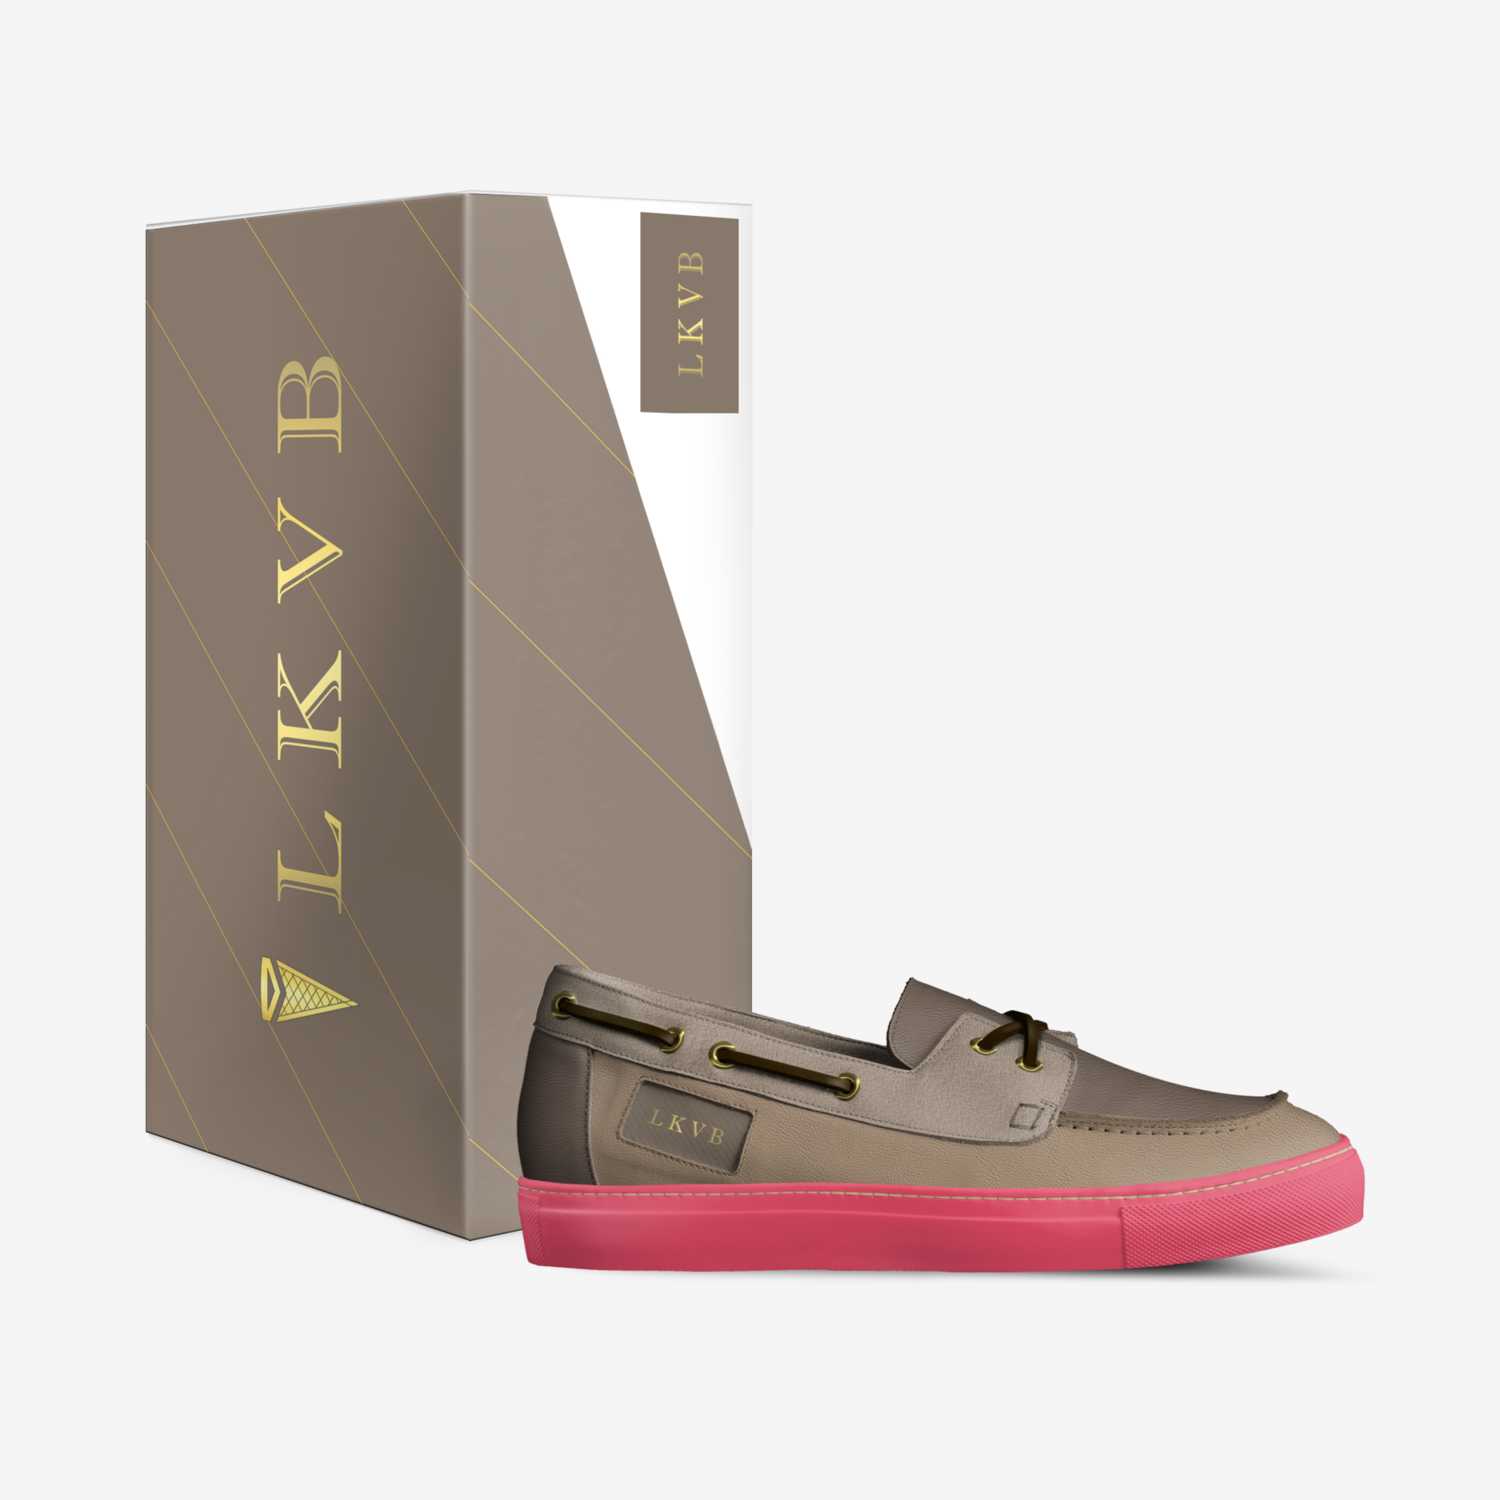 L K V B  custom made in Italy shoes by Lorraine Kleering van Beerenbergh | Box view